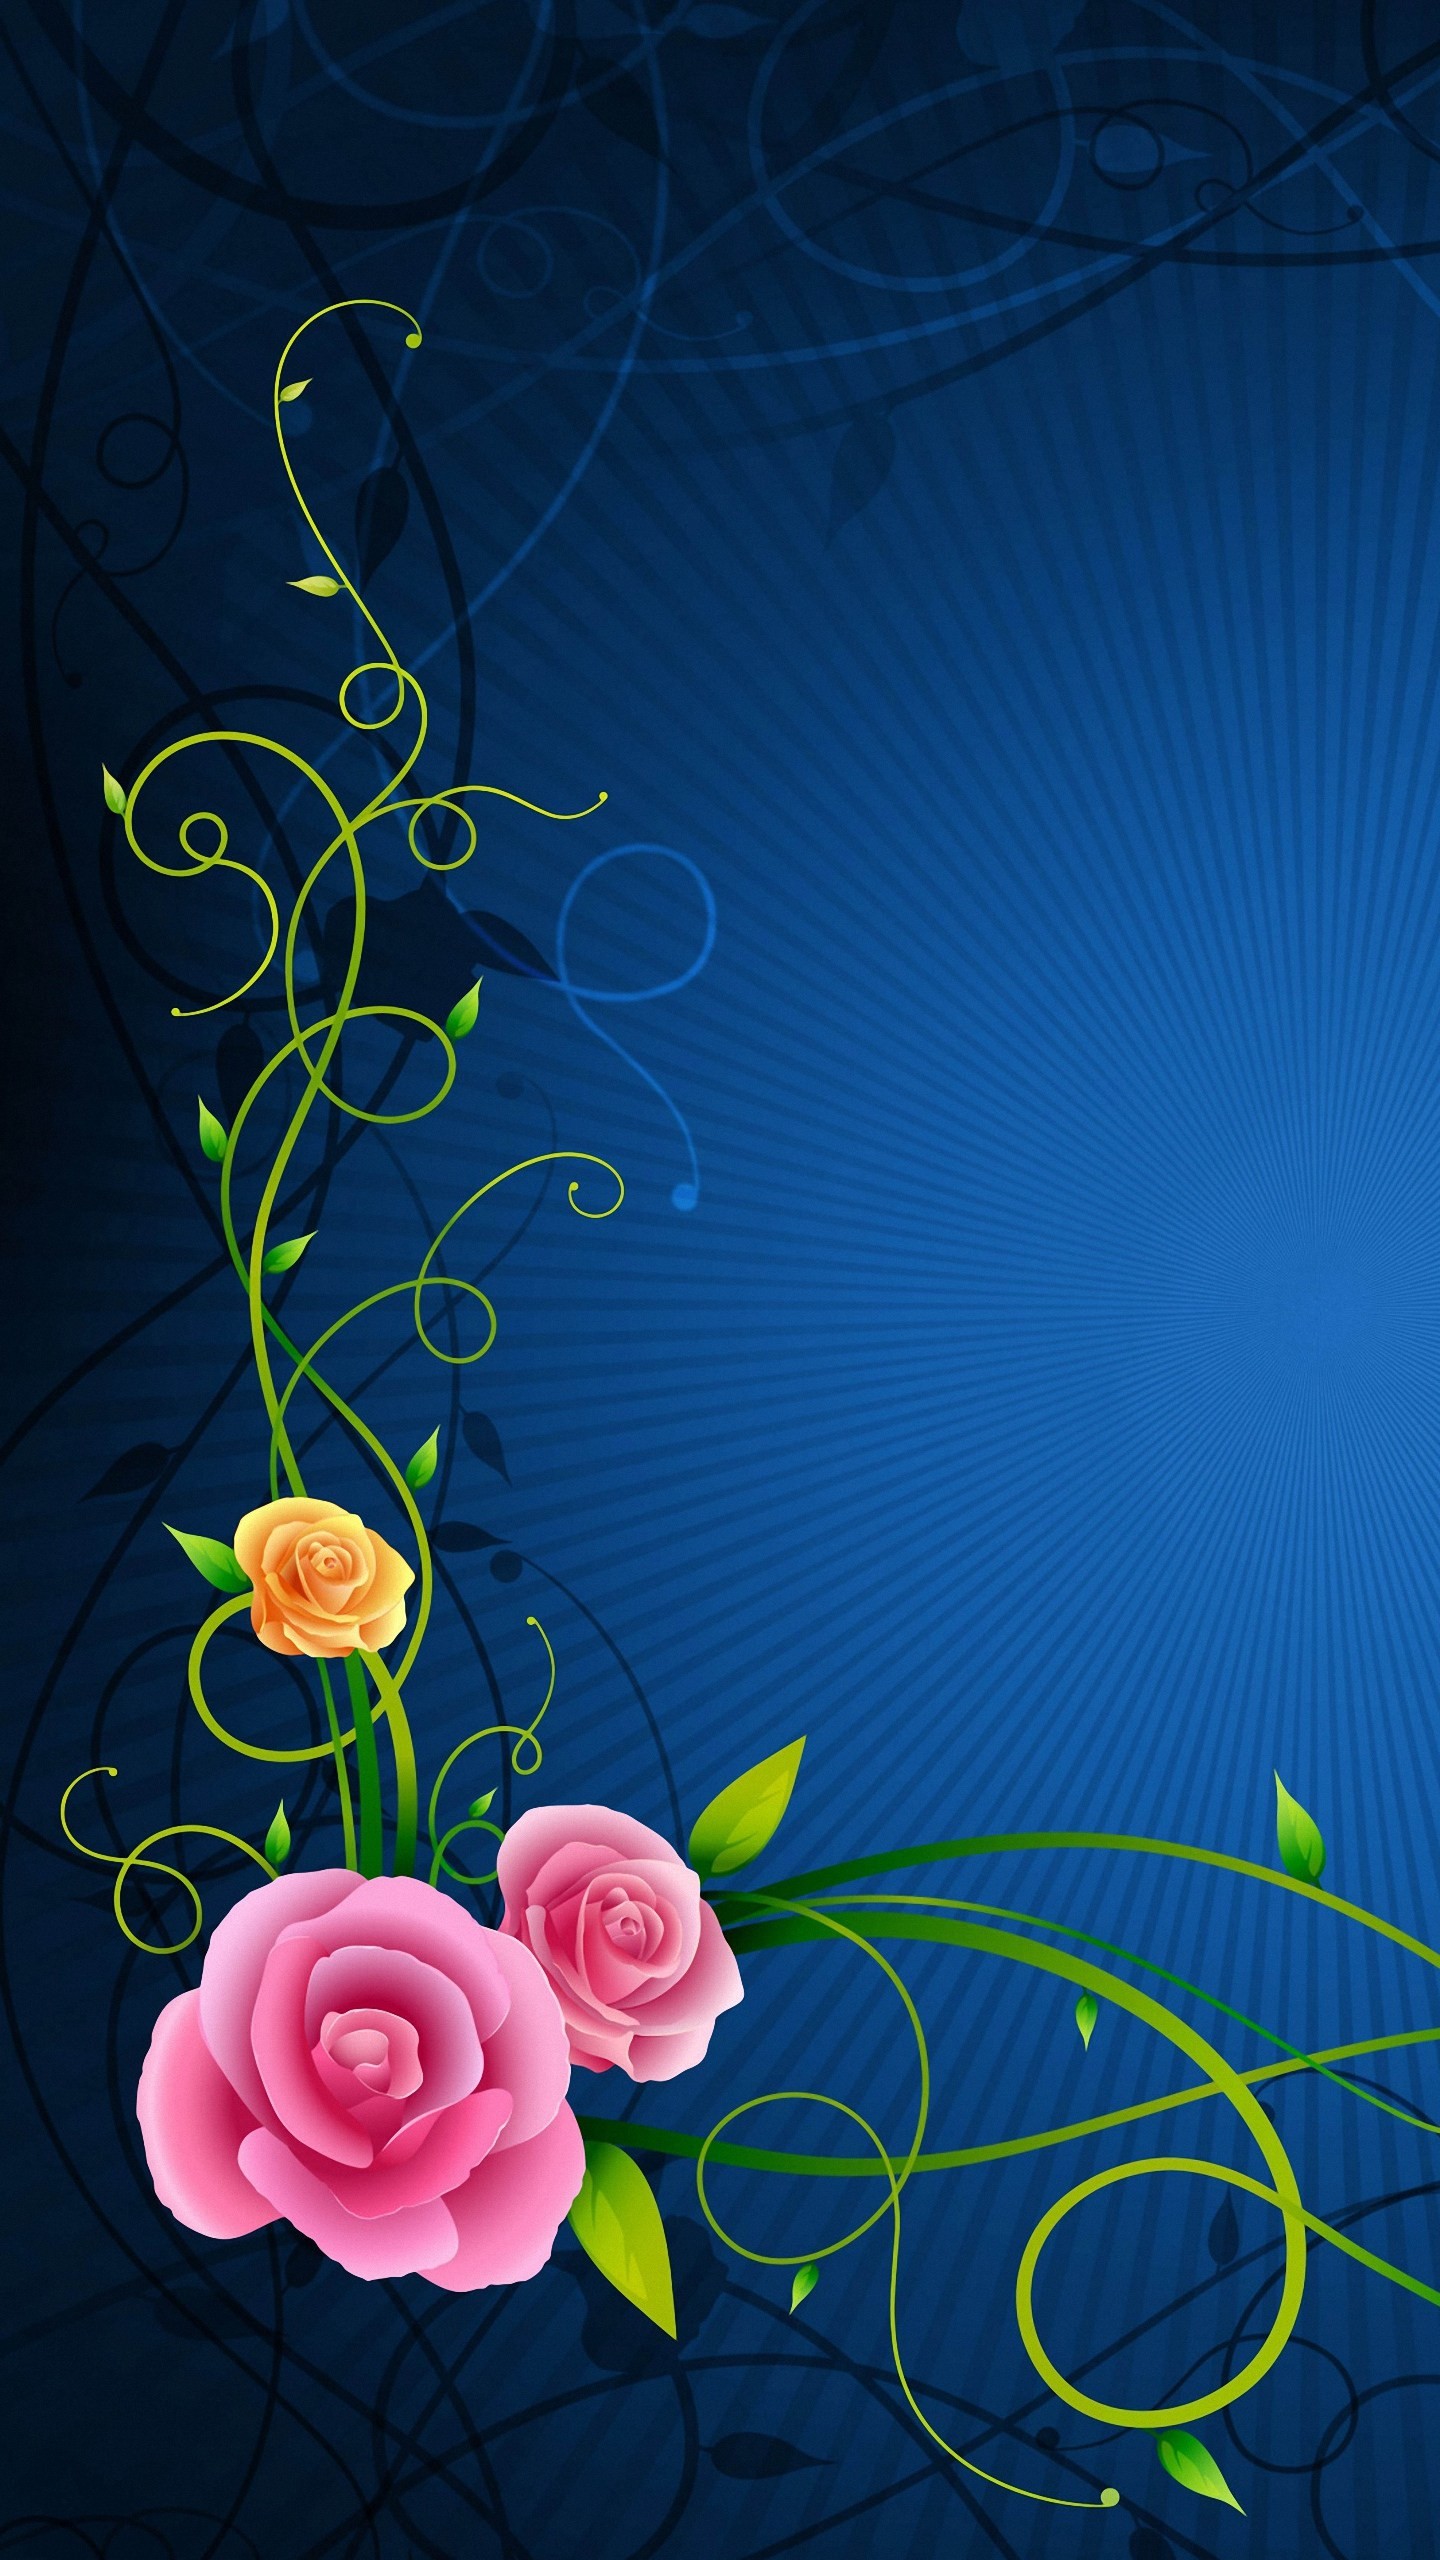 fonds d'écran mignons pour android,bleu,art floral,fleur,plante,arrangement floral